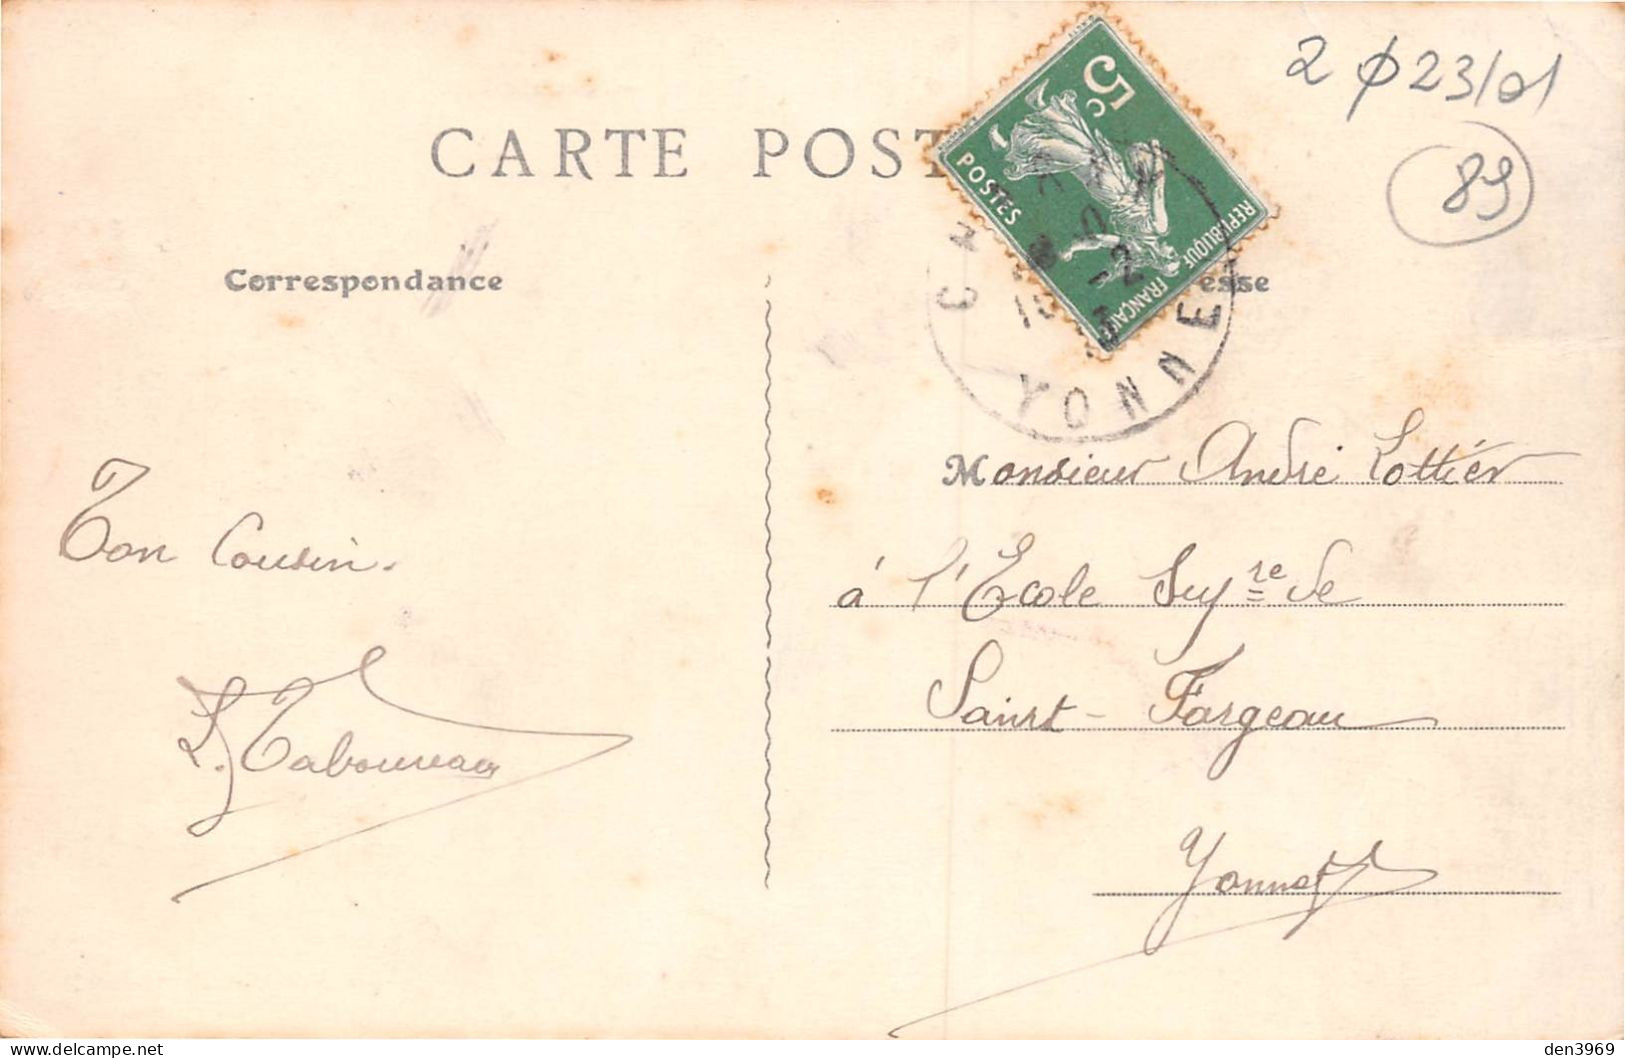 CHARNY (Yonne) - Grande Rue - Romain Coiffeur - Voyagé 1913 (2 Scans) André Lottier, Ecole Supérieure De Saint-Fargeau - Charny